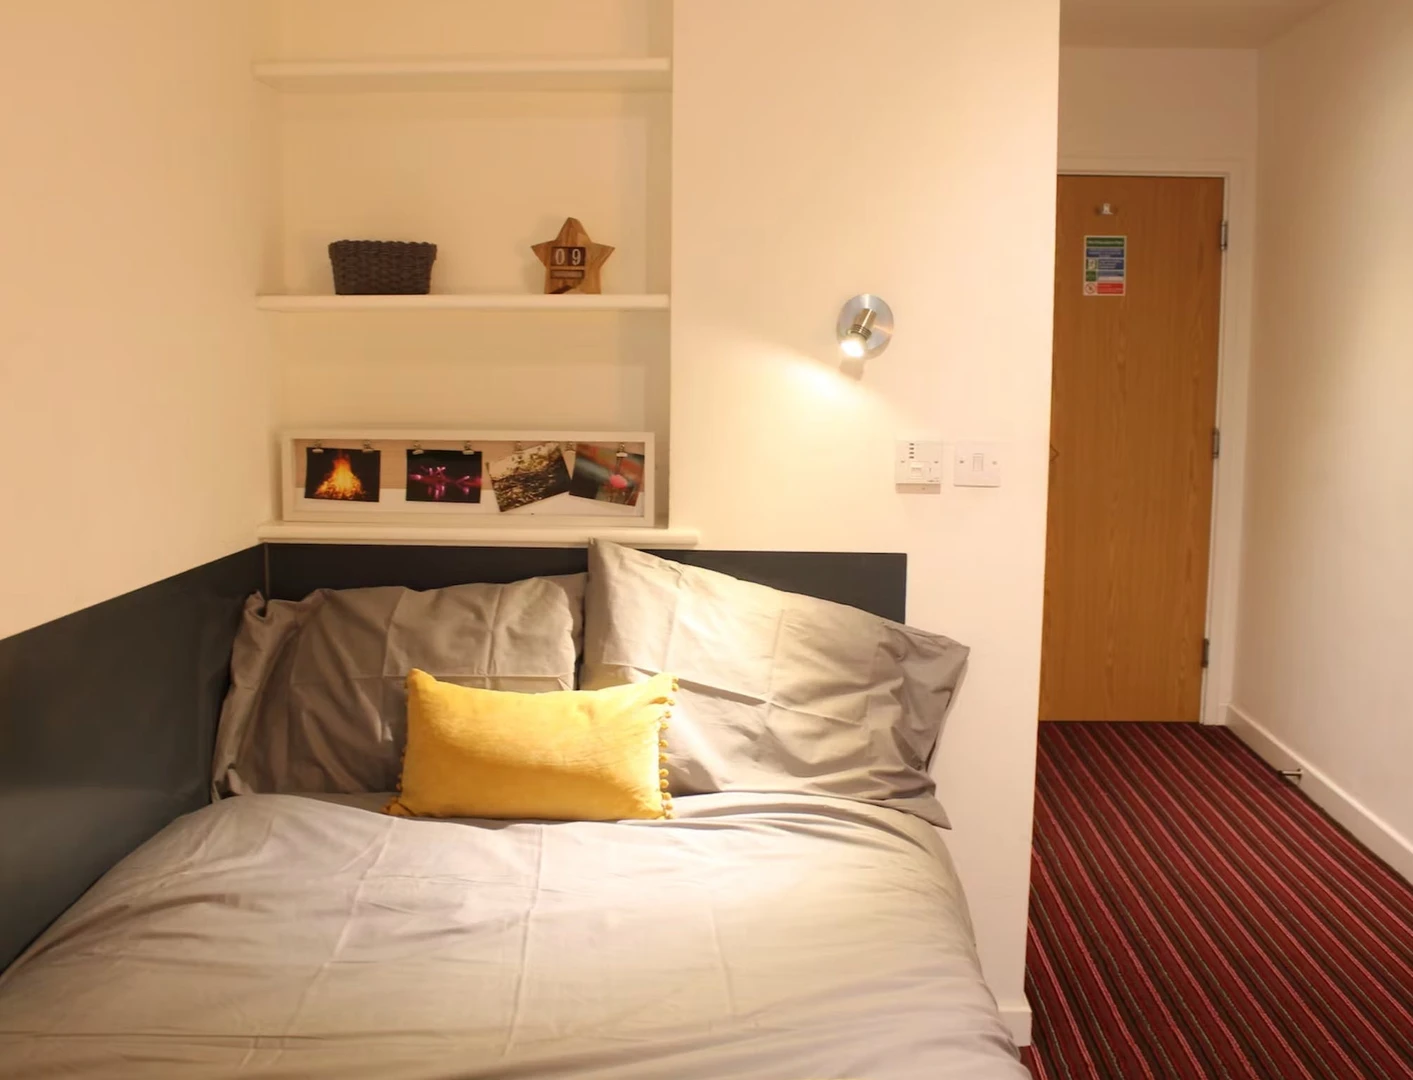 Leicester de çift kişilik yataklı kiralık oda